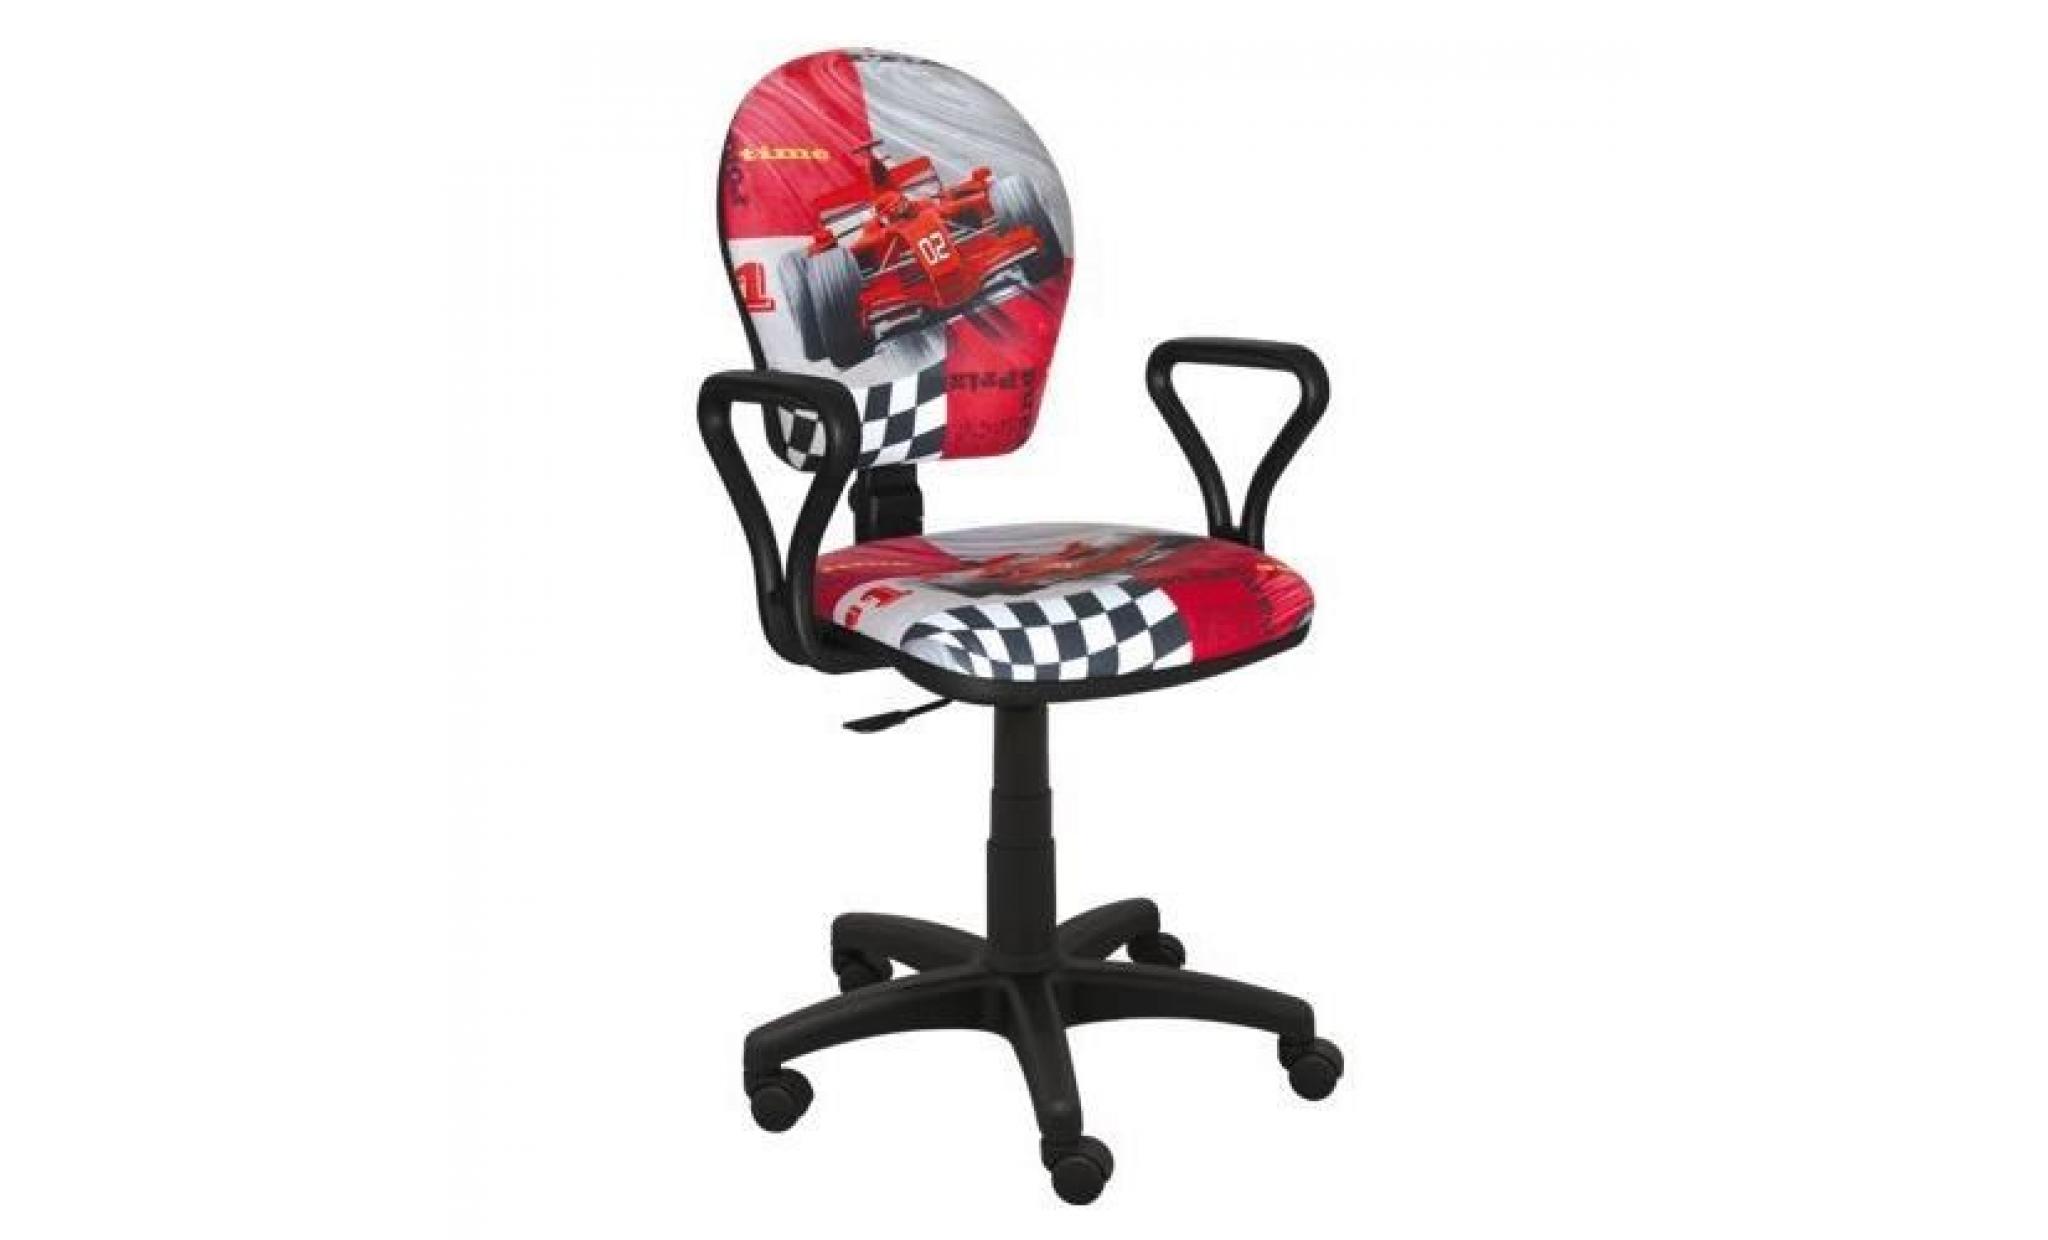 idéal pour les enfants chaise de bureau chaise pivotante chaise de bureau jeunesse de nombreux modèles f1 moteur de formule1